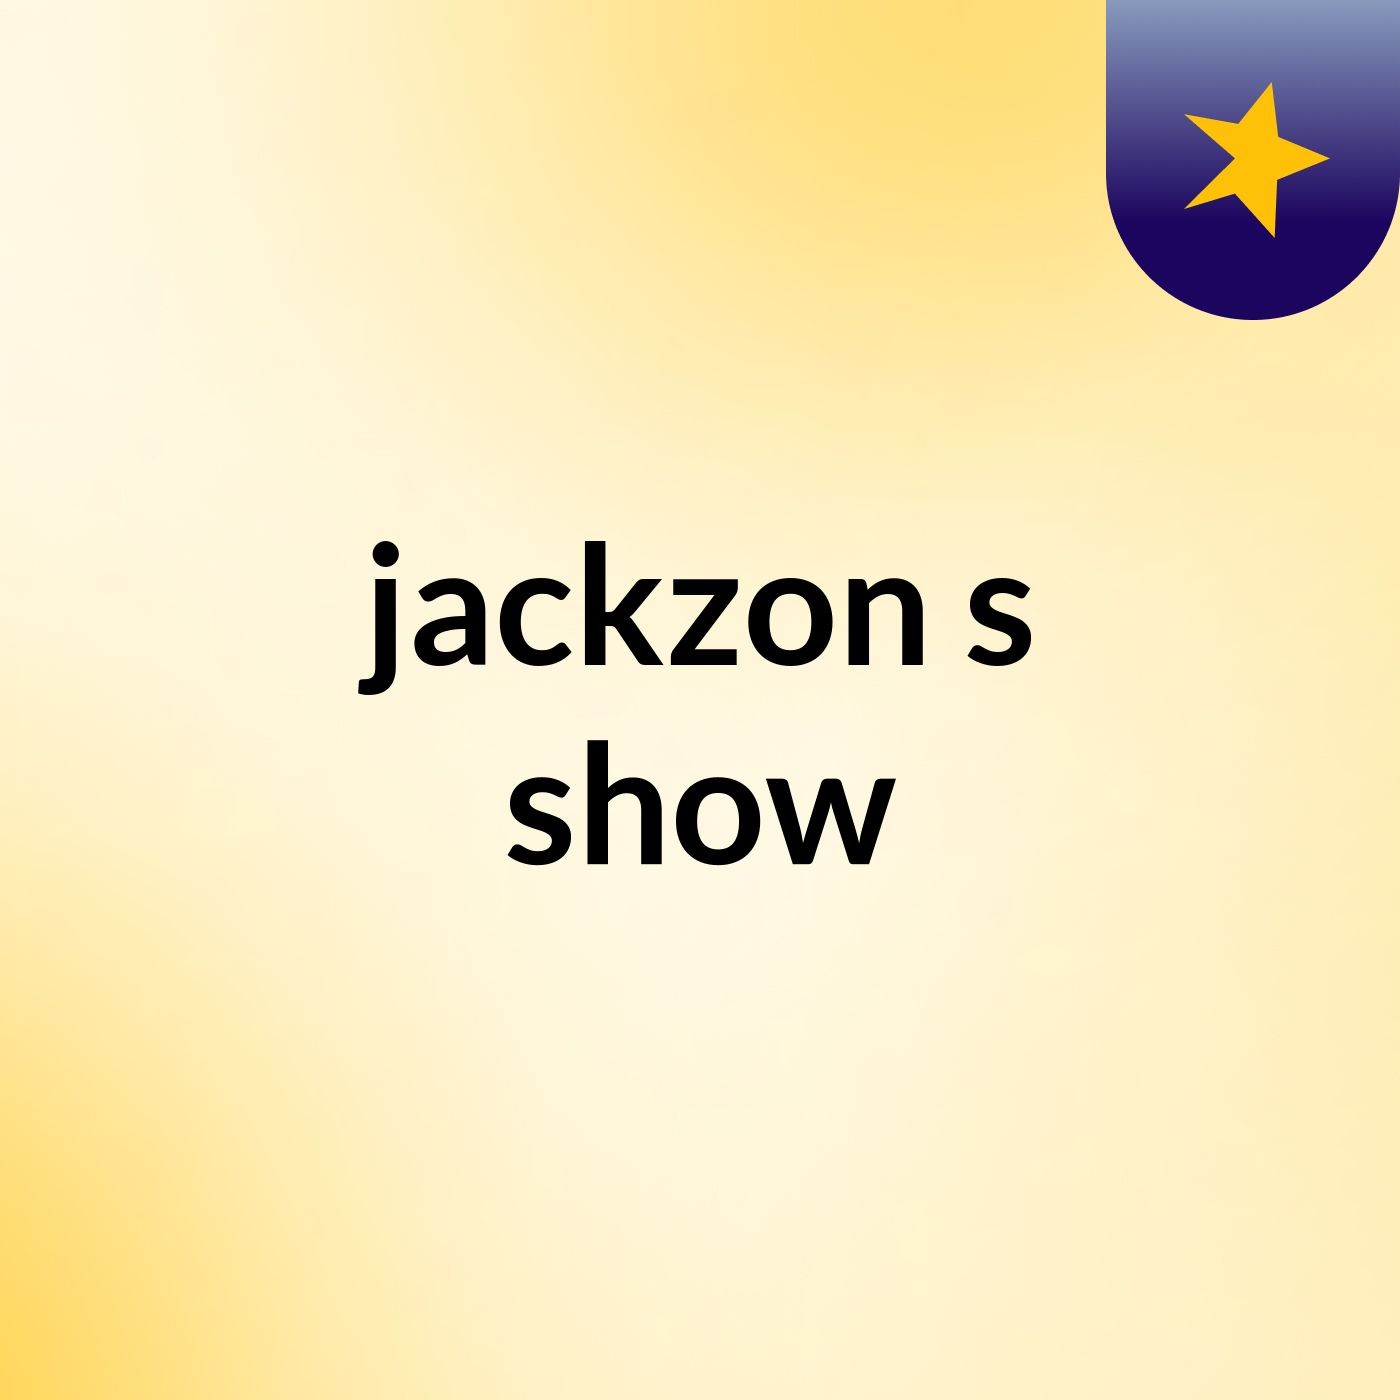 jackzon's show